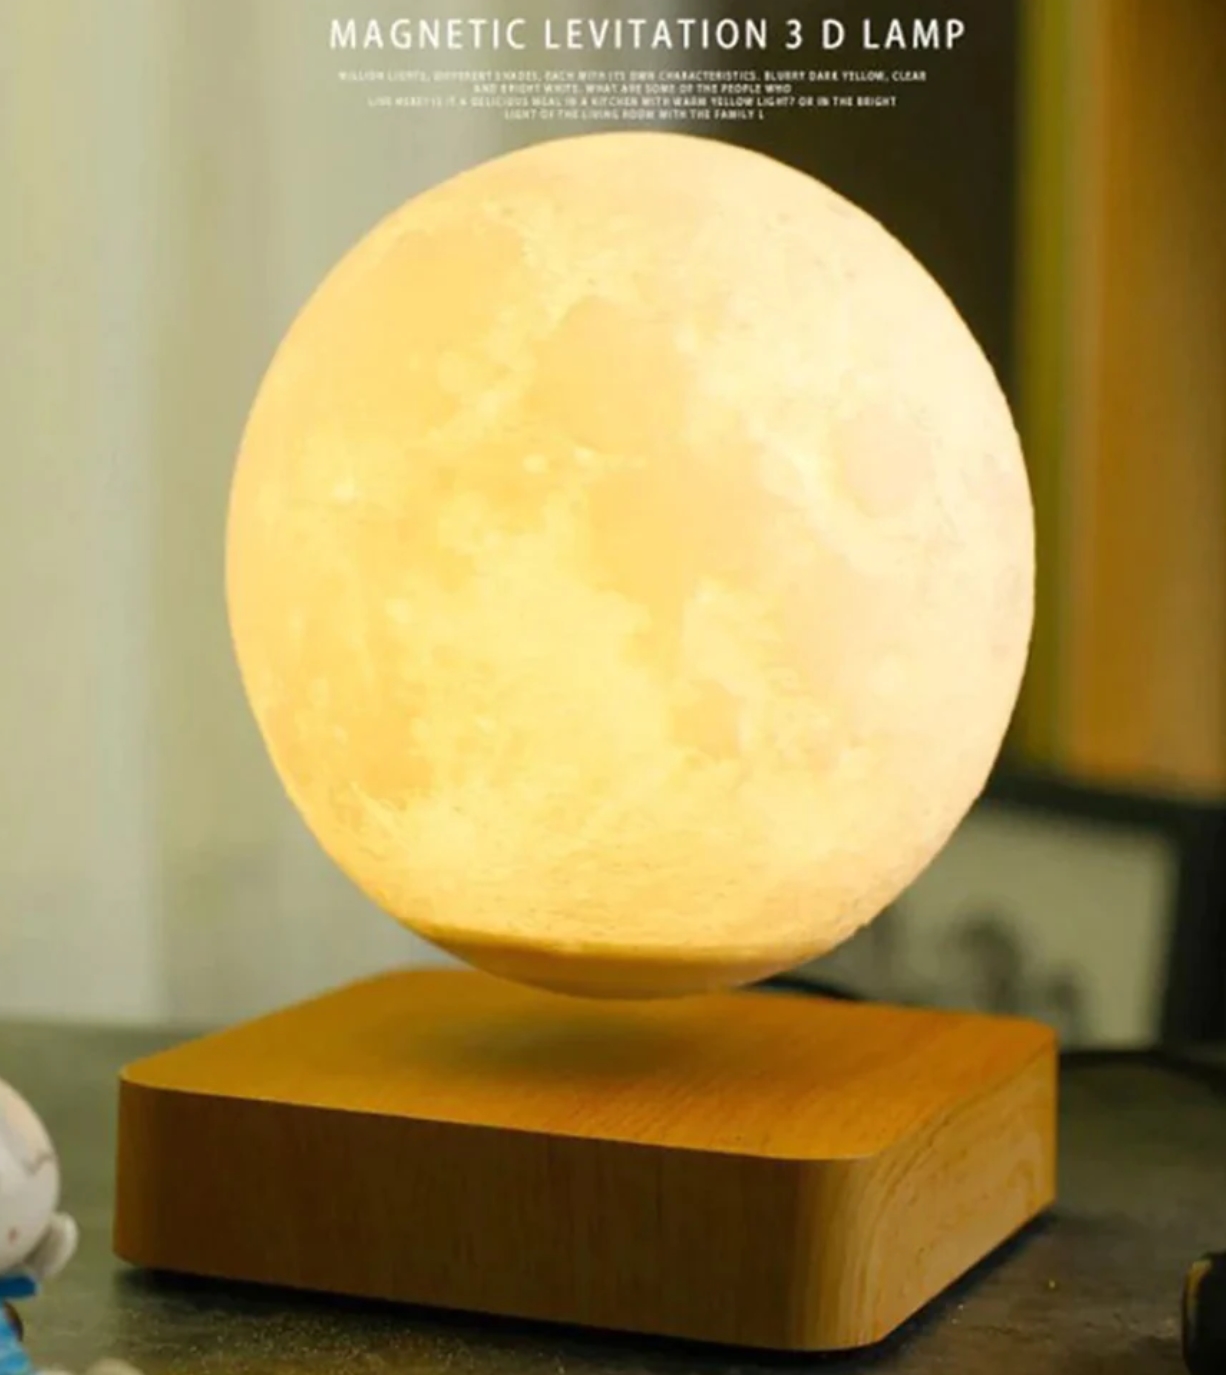 Vendita calda stampa 3D creativa luce lunare levitazione magnetica galleggiante creativa lampadina luna da 6 pollici compleanno e decorazione